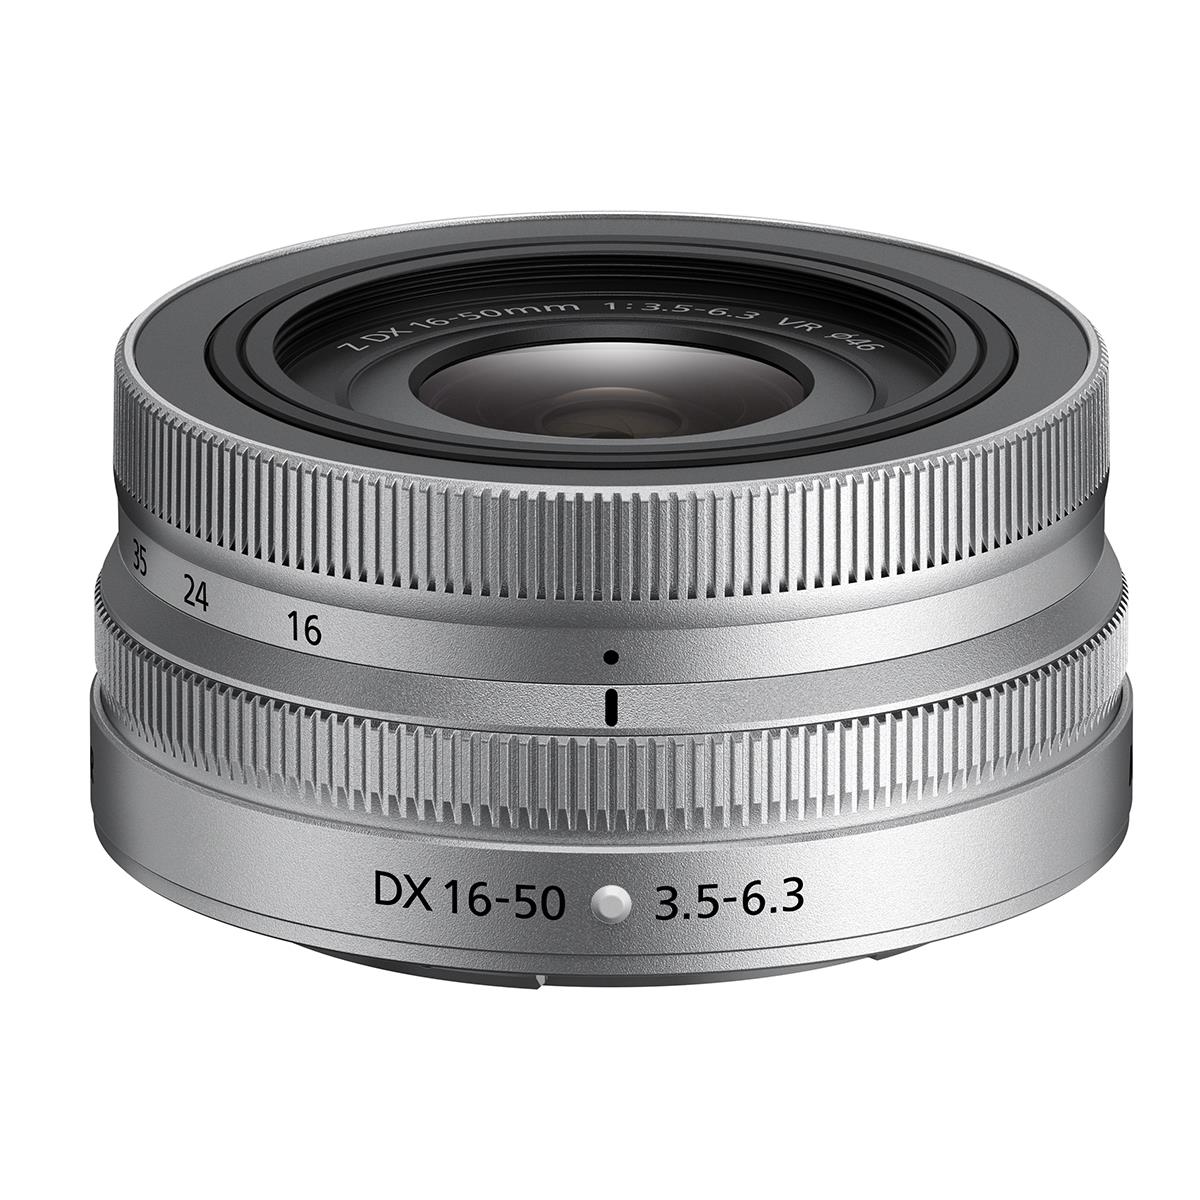 Nikon Z 16-50mm f/3.5-6.3 VR DX Lens (Silver)